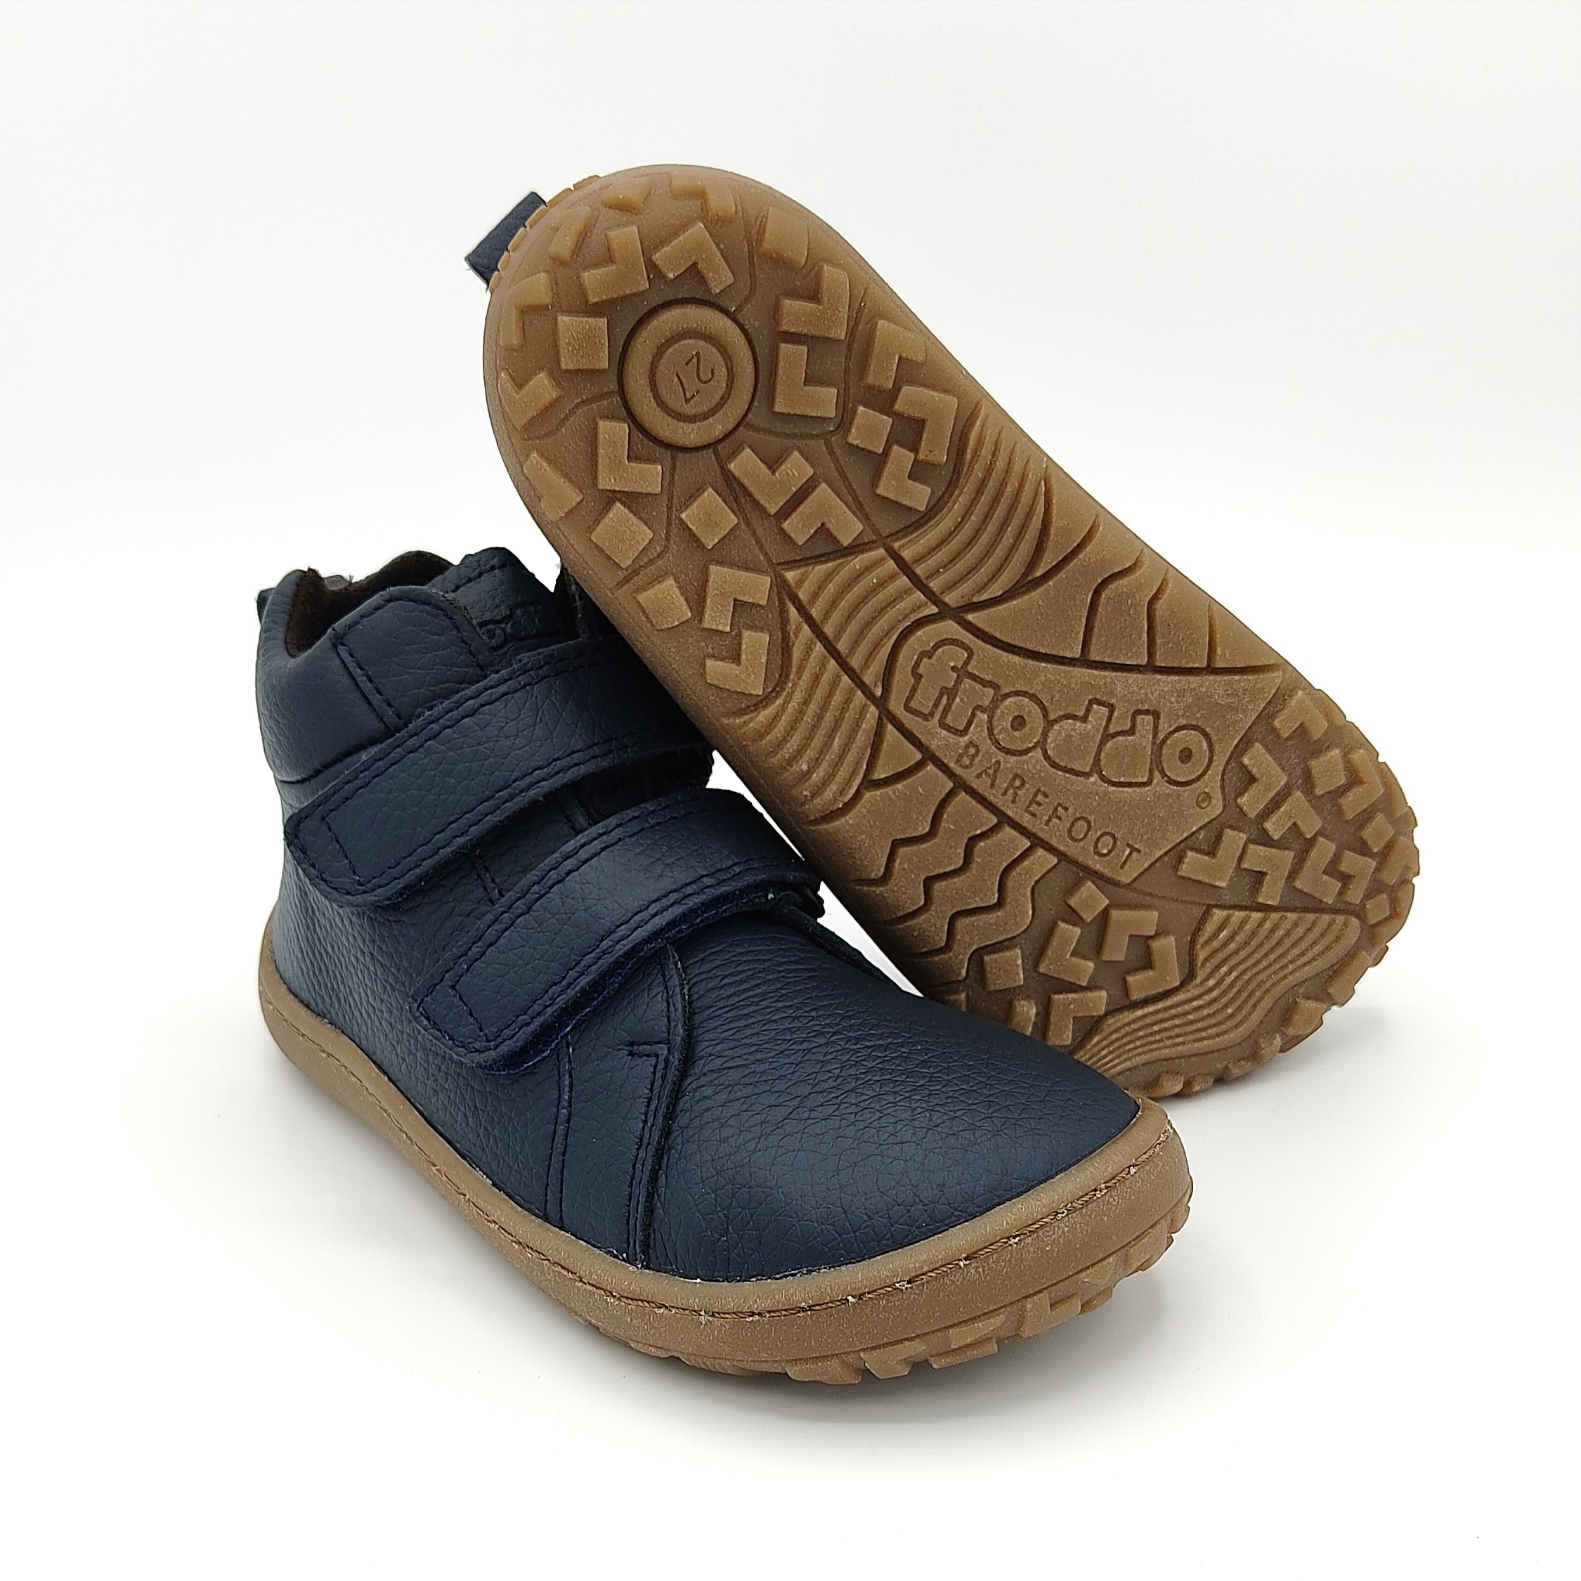 Bottines AUTUMN Froddo barefoot - blue - G3110201